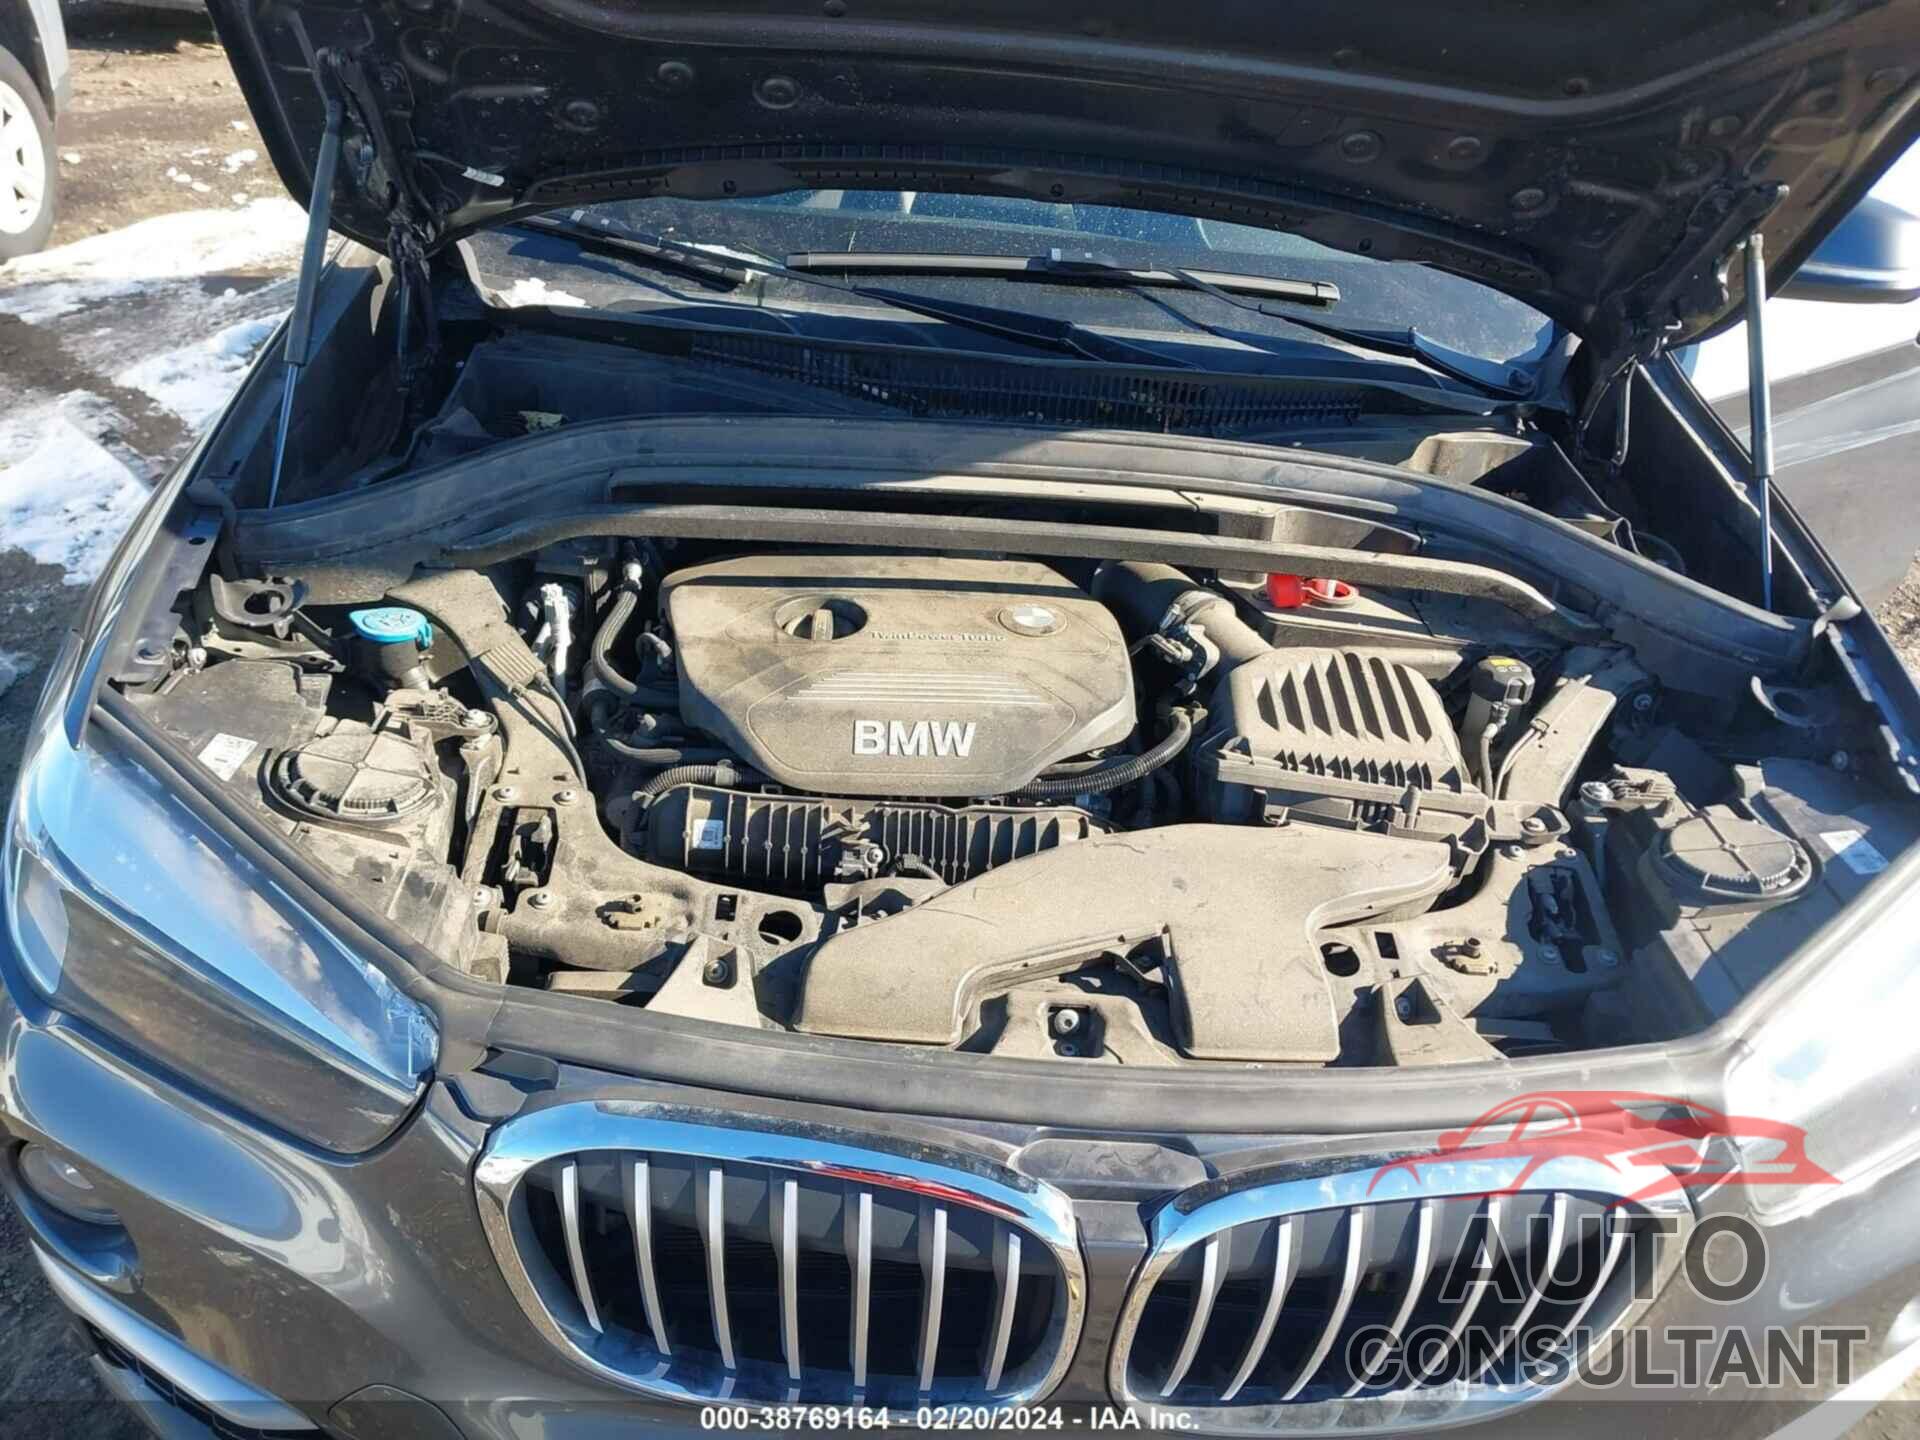 BMW X1 2019 - WBXHT3C51K5L38163